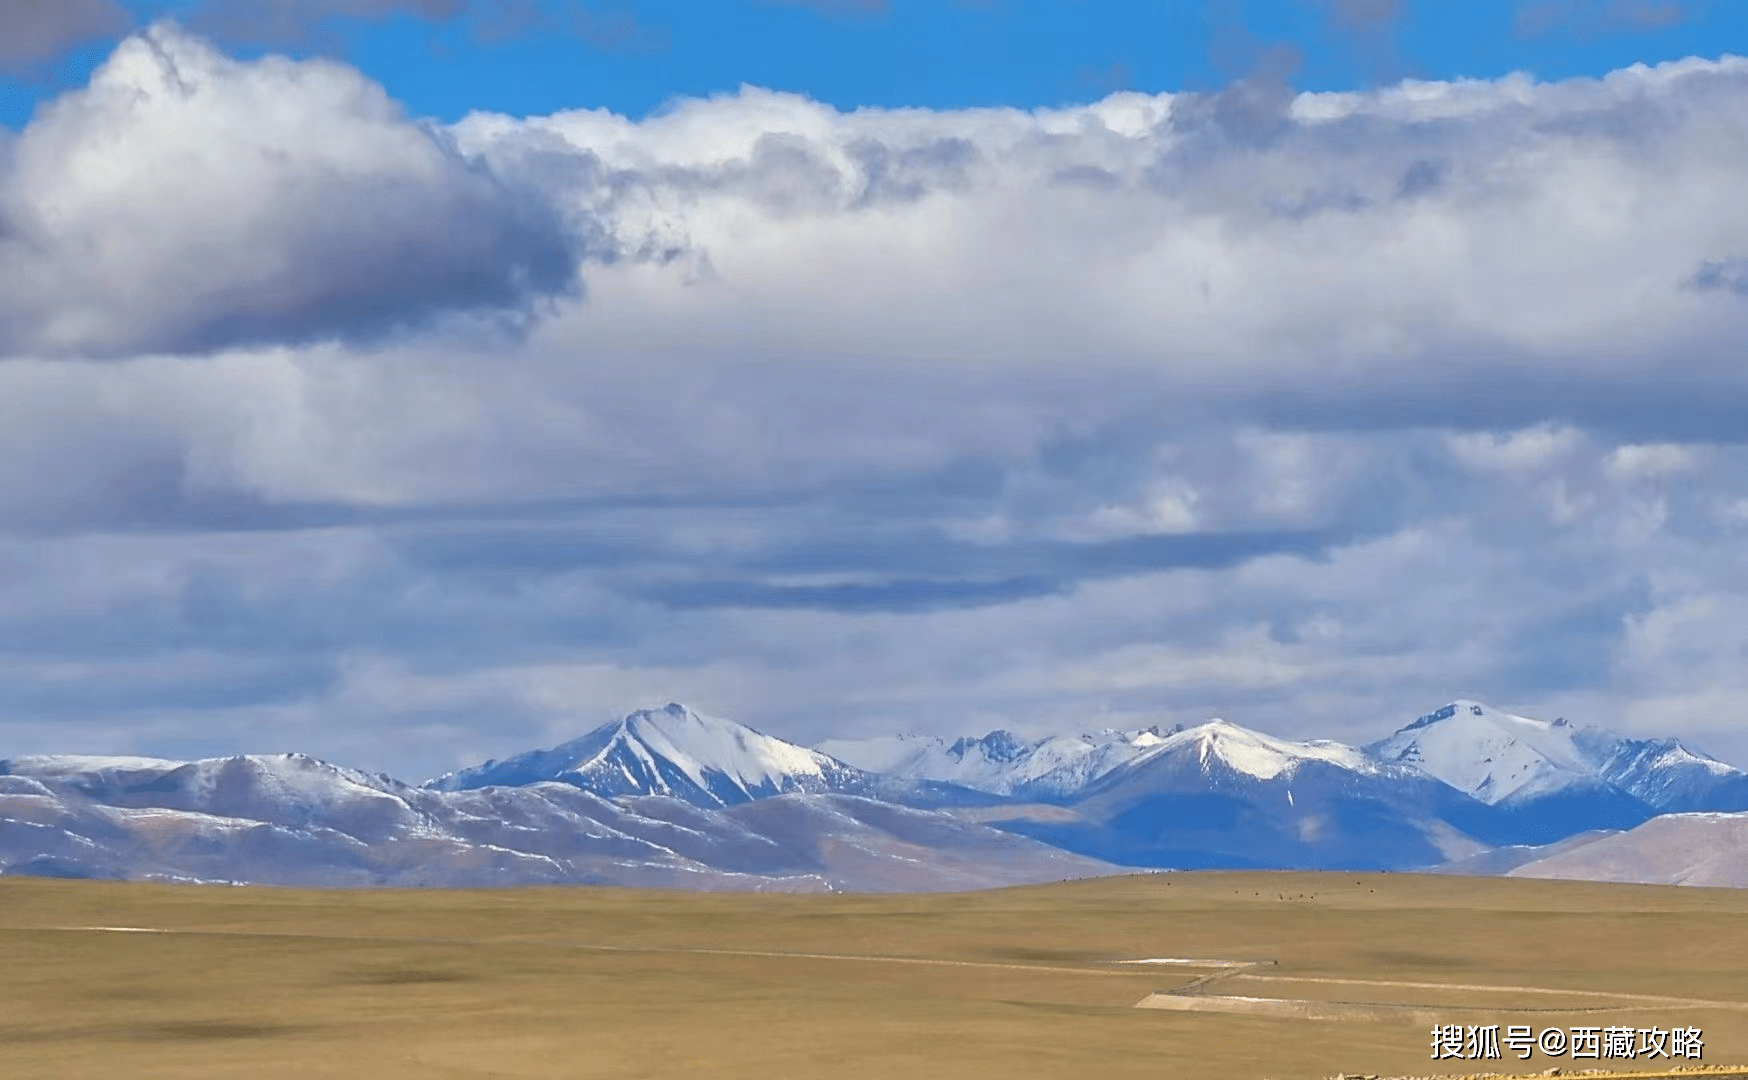 原创             连接新疆与西藏的216国道已投入使用